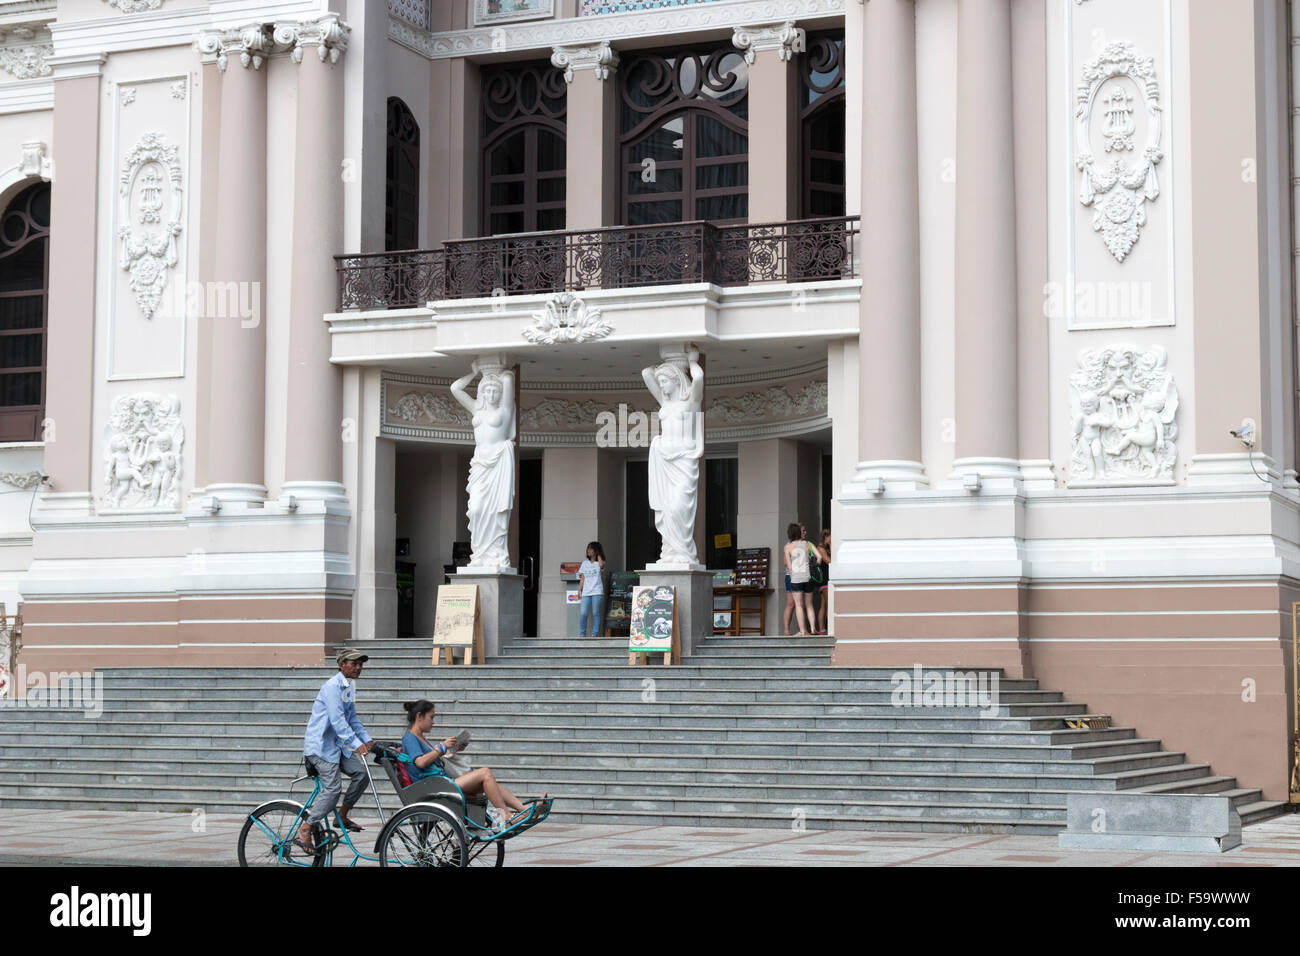 Stadttheater von Ho-Chi-Minh-Stadt, auch bekannt als Saigon Opera House, wurde durch die Franzosen im Jahre 1897 gebaut. Vietnam. Stockfoto